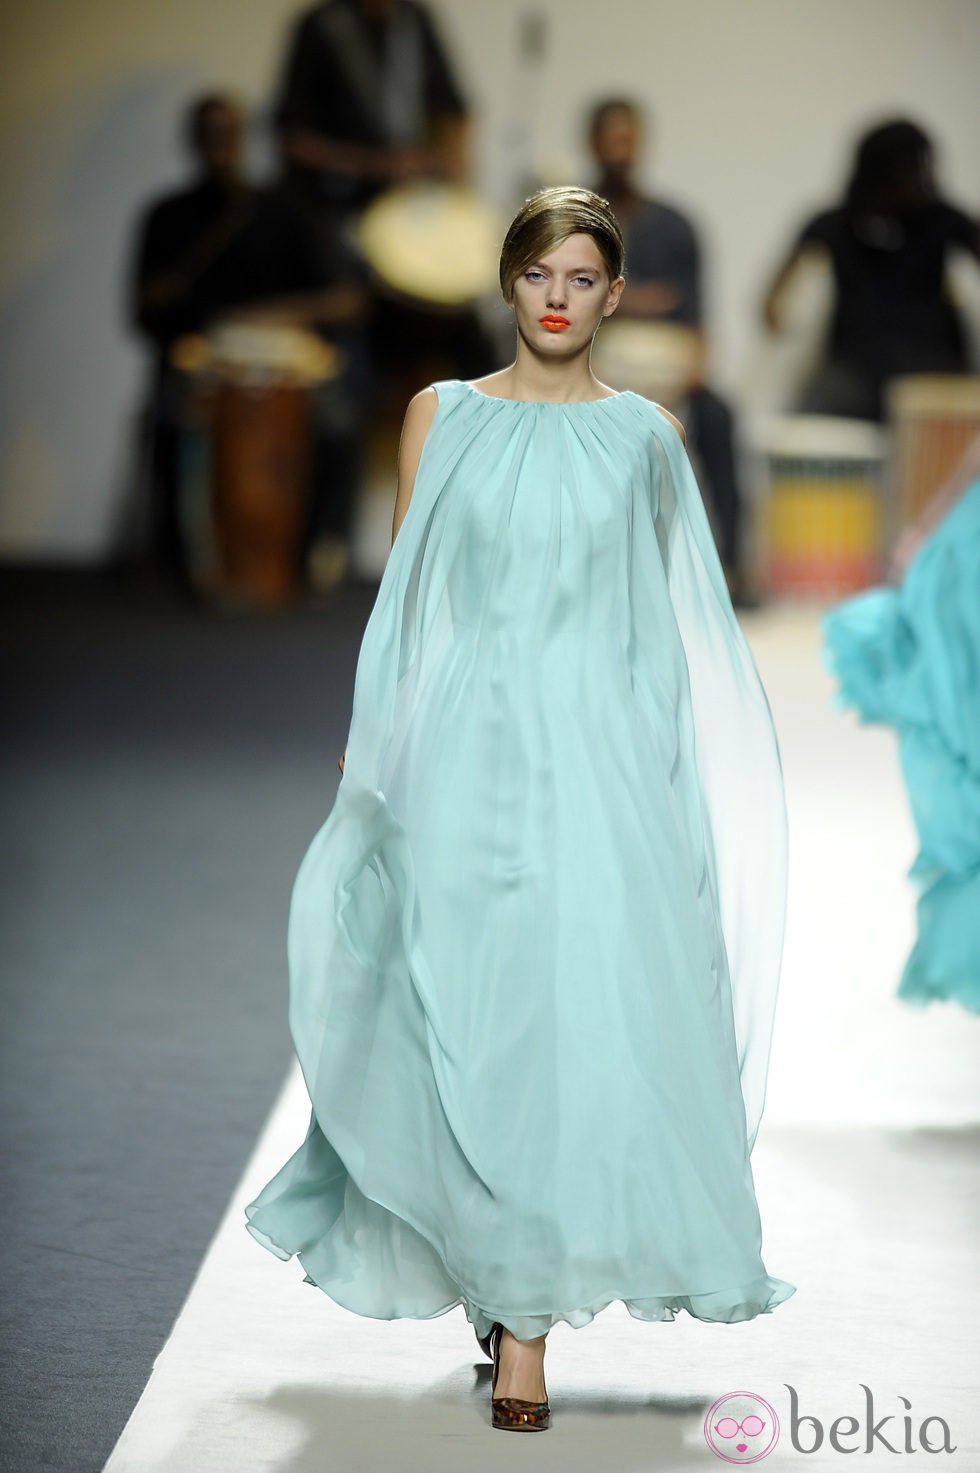 Vestido azul celeste vaporoso de Duyos para primavera 2012 en Cibeles 2011